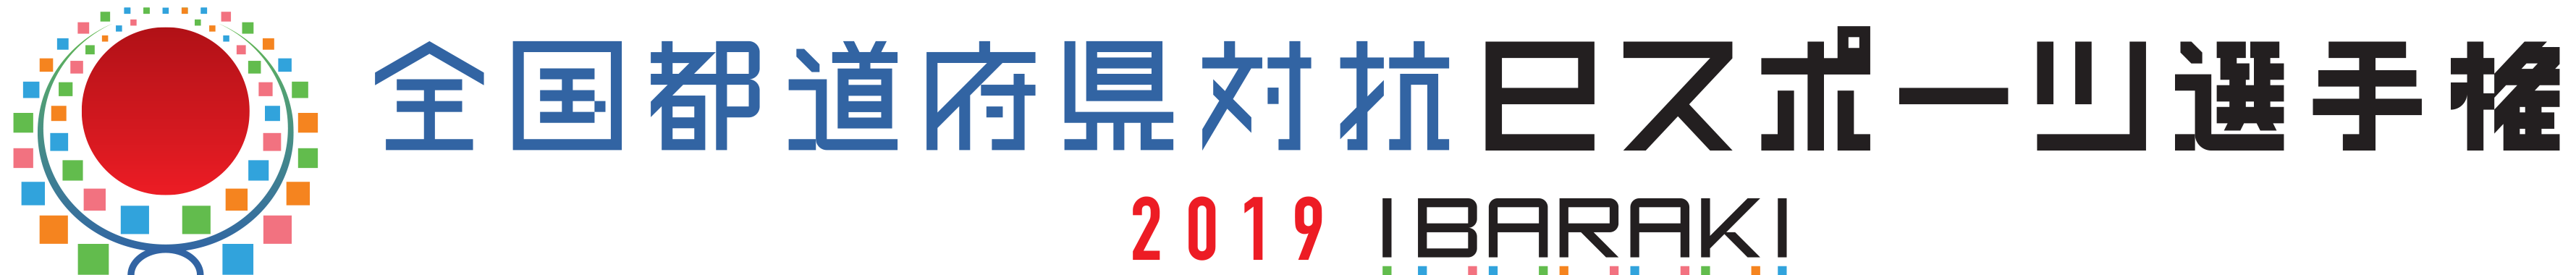 「全国都道府県対抗eスポーツ選手権2019 IBARAKI」大会ロゴ